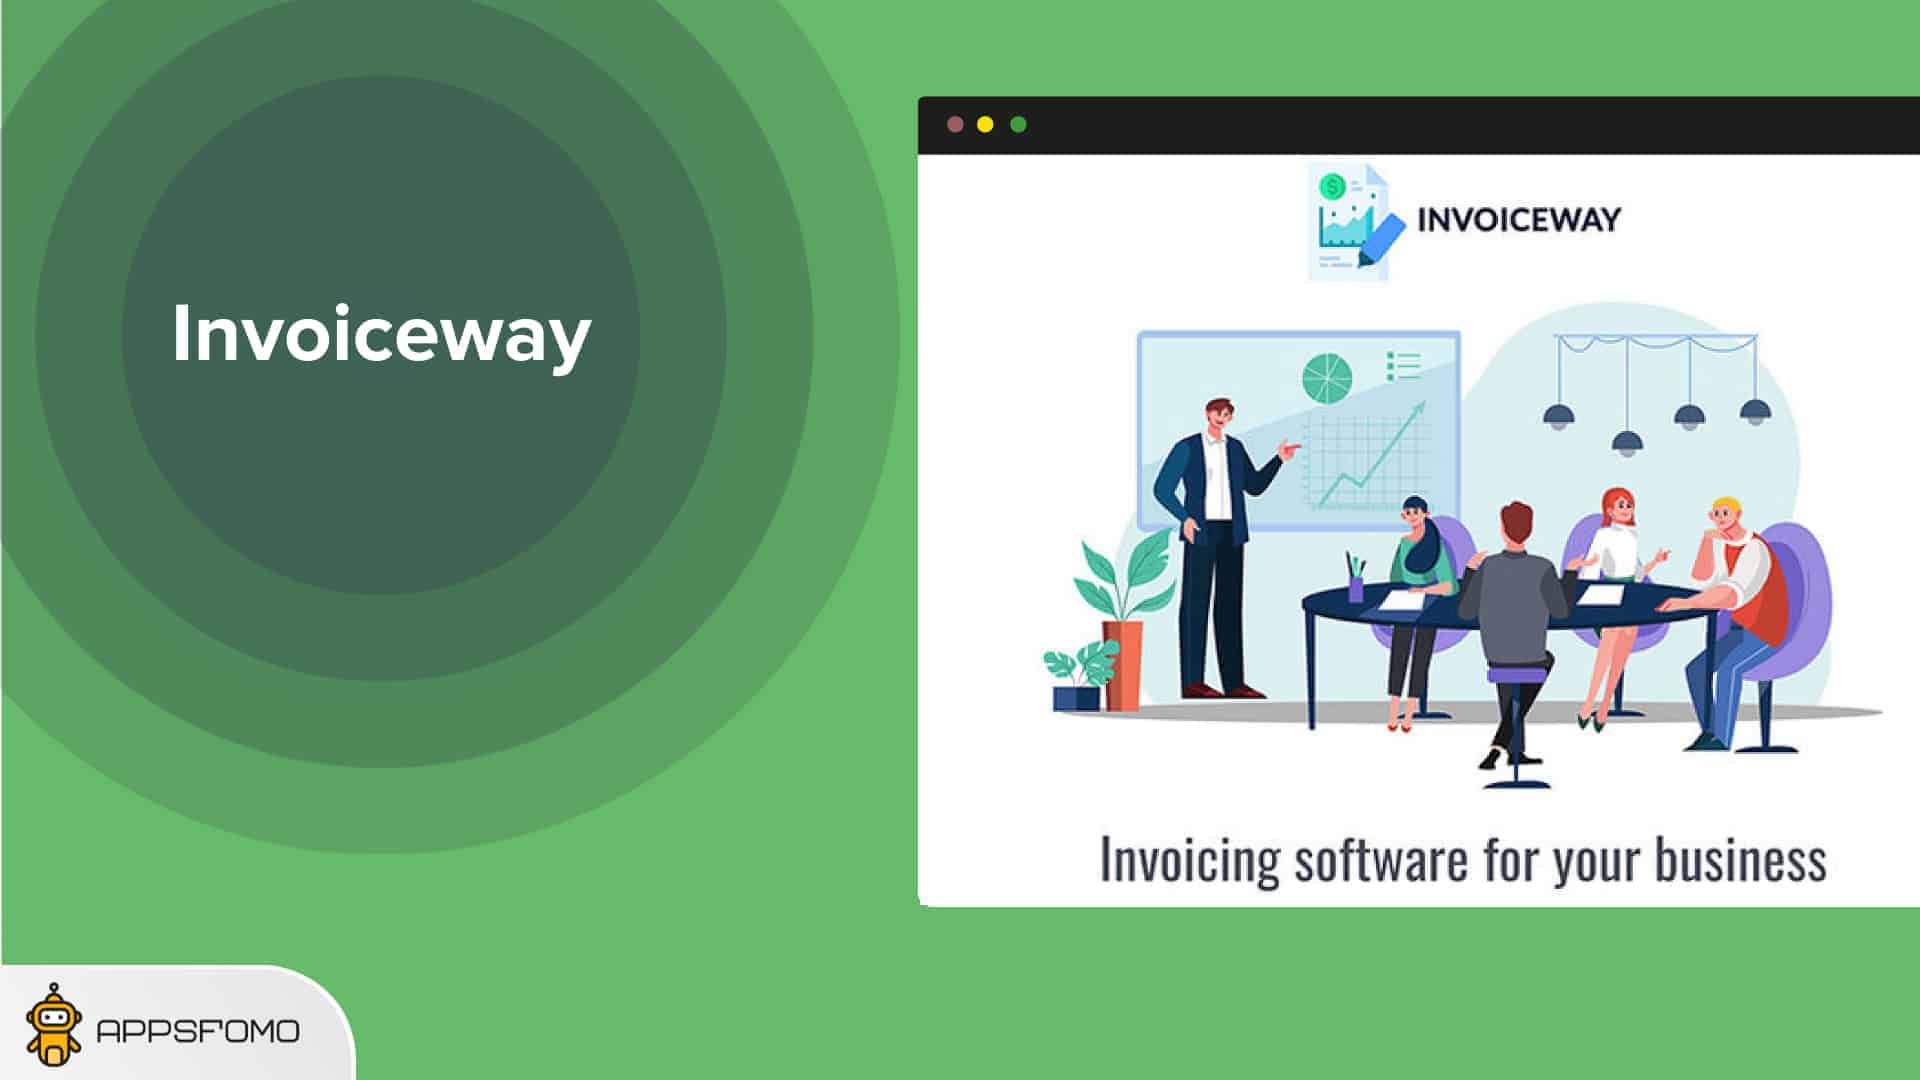 Invoice-way